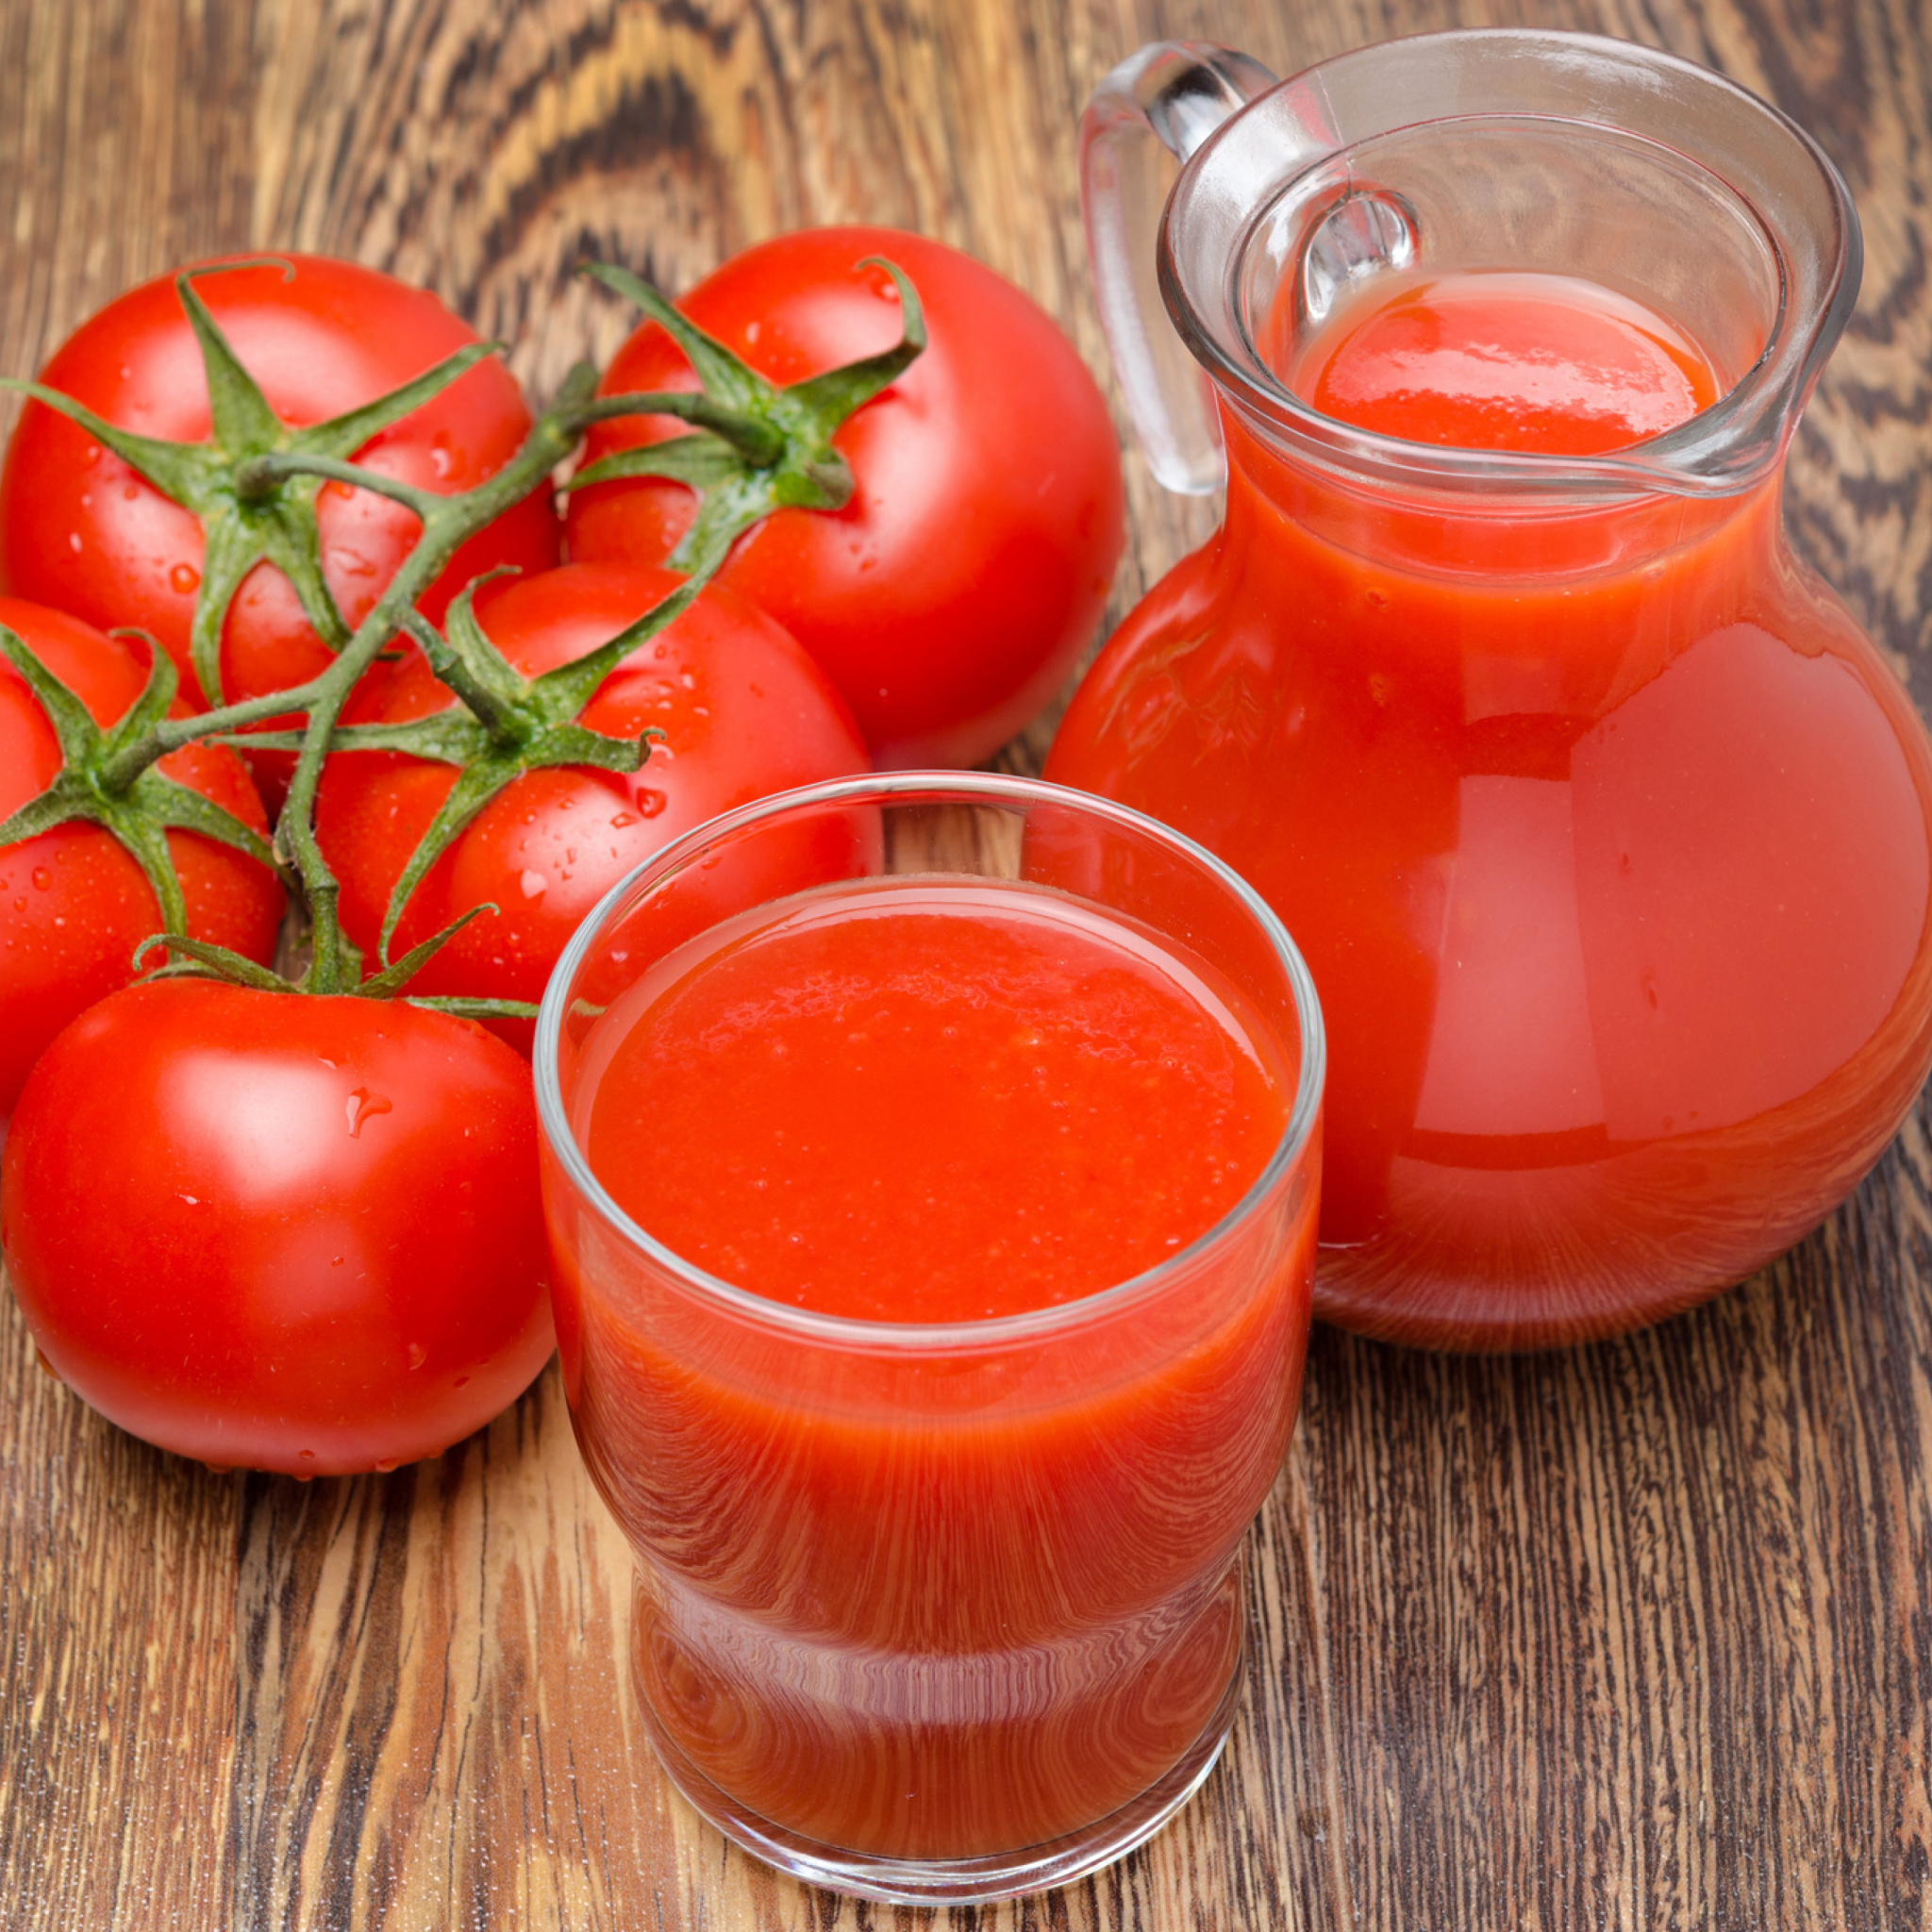 Сделать томатный сок из домашних помидор. Томатный сок. Томатный сок домашний. Томатный сок на зиму. Домашний помидорный сок.